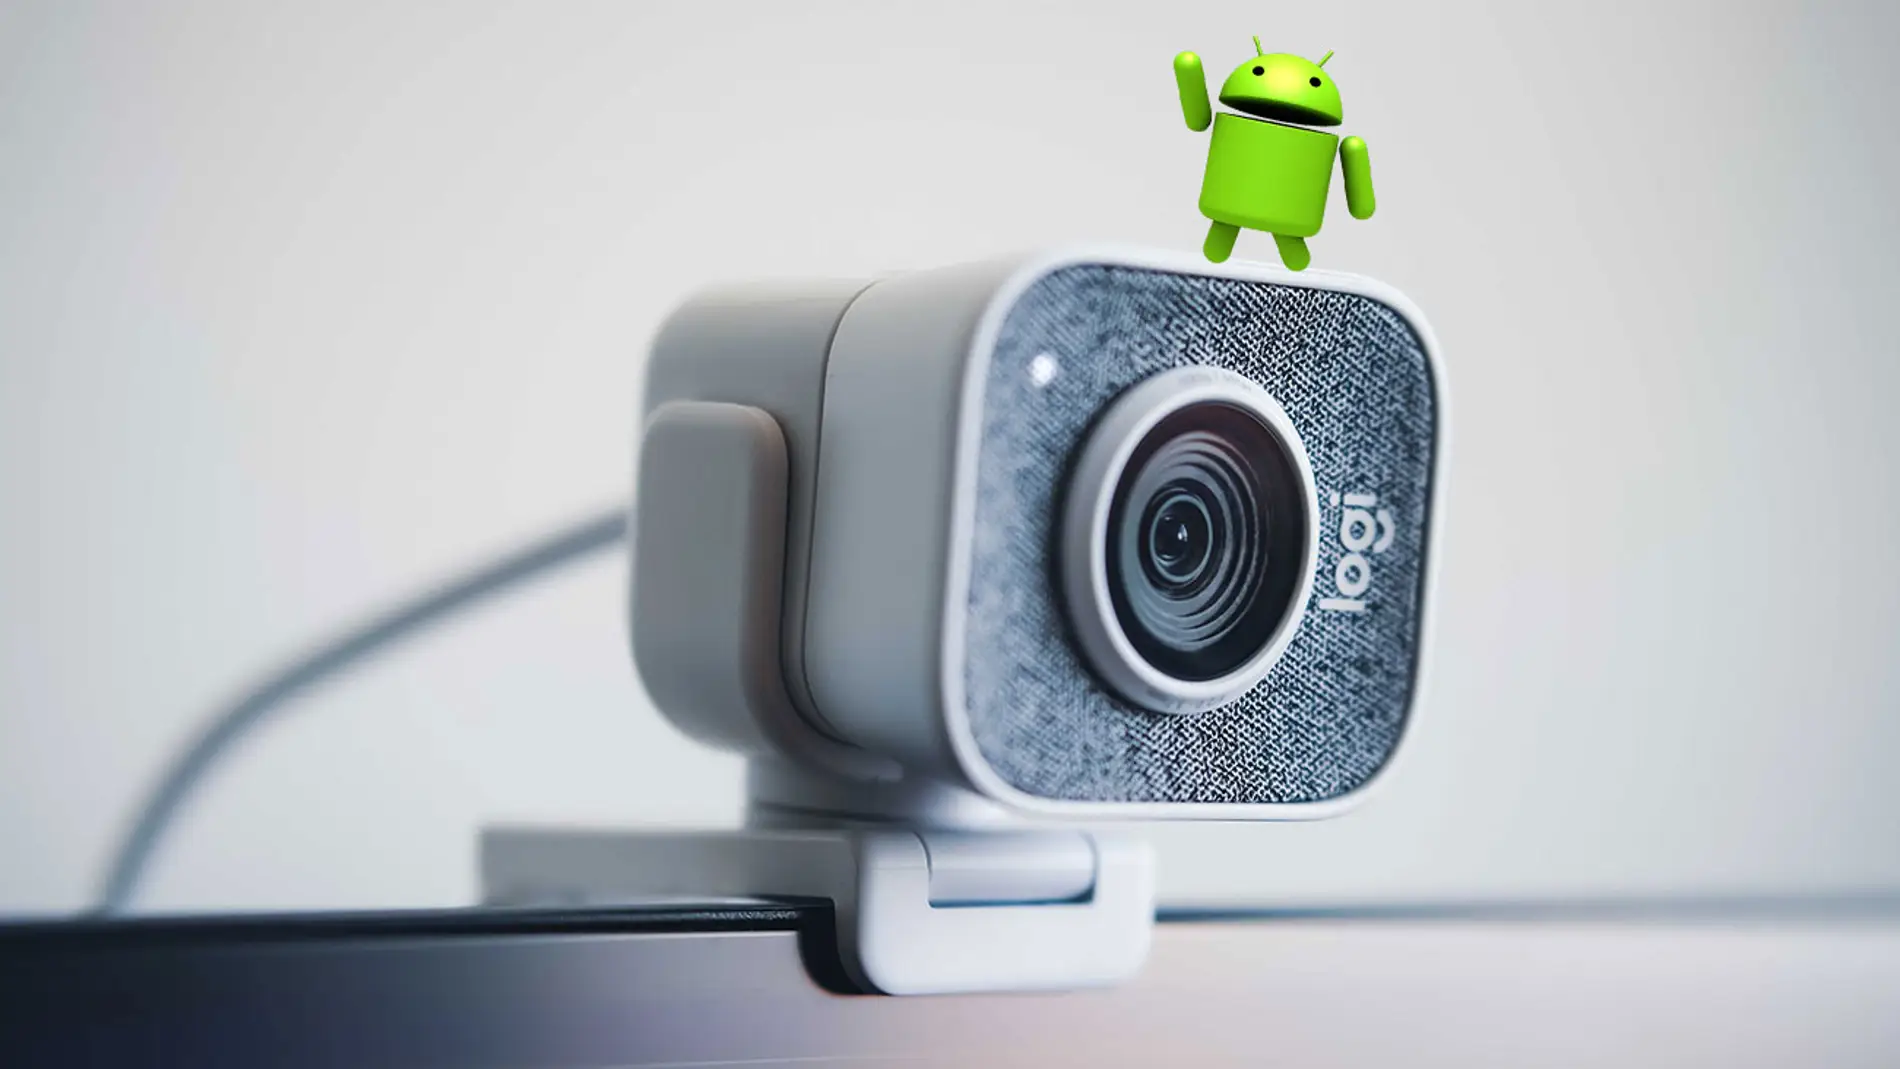 oficial pobreza consenso Gracias a Google podrás convertir en una webcam USB tu móvil Android